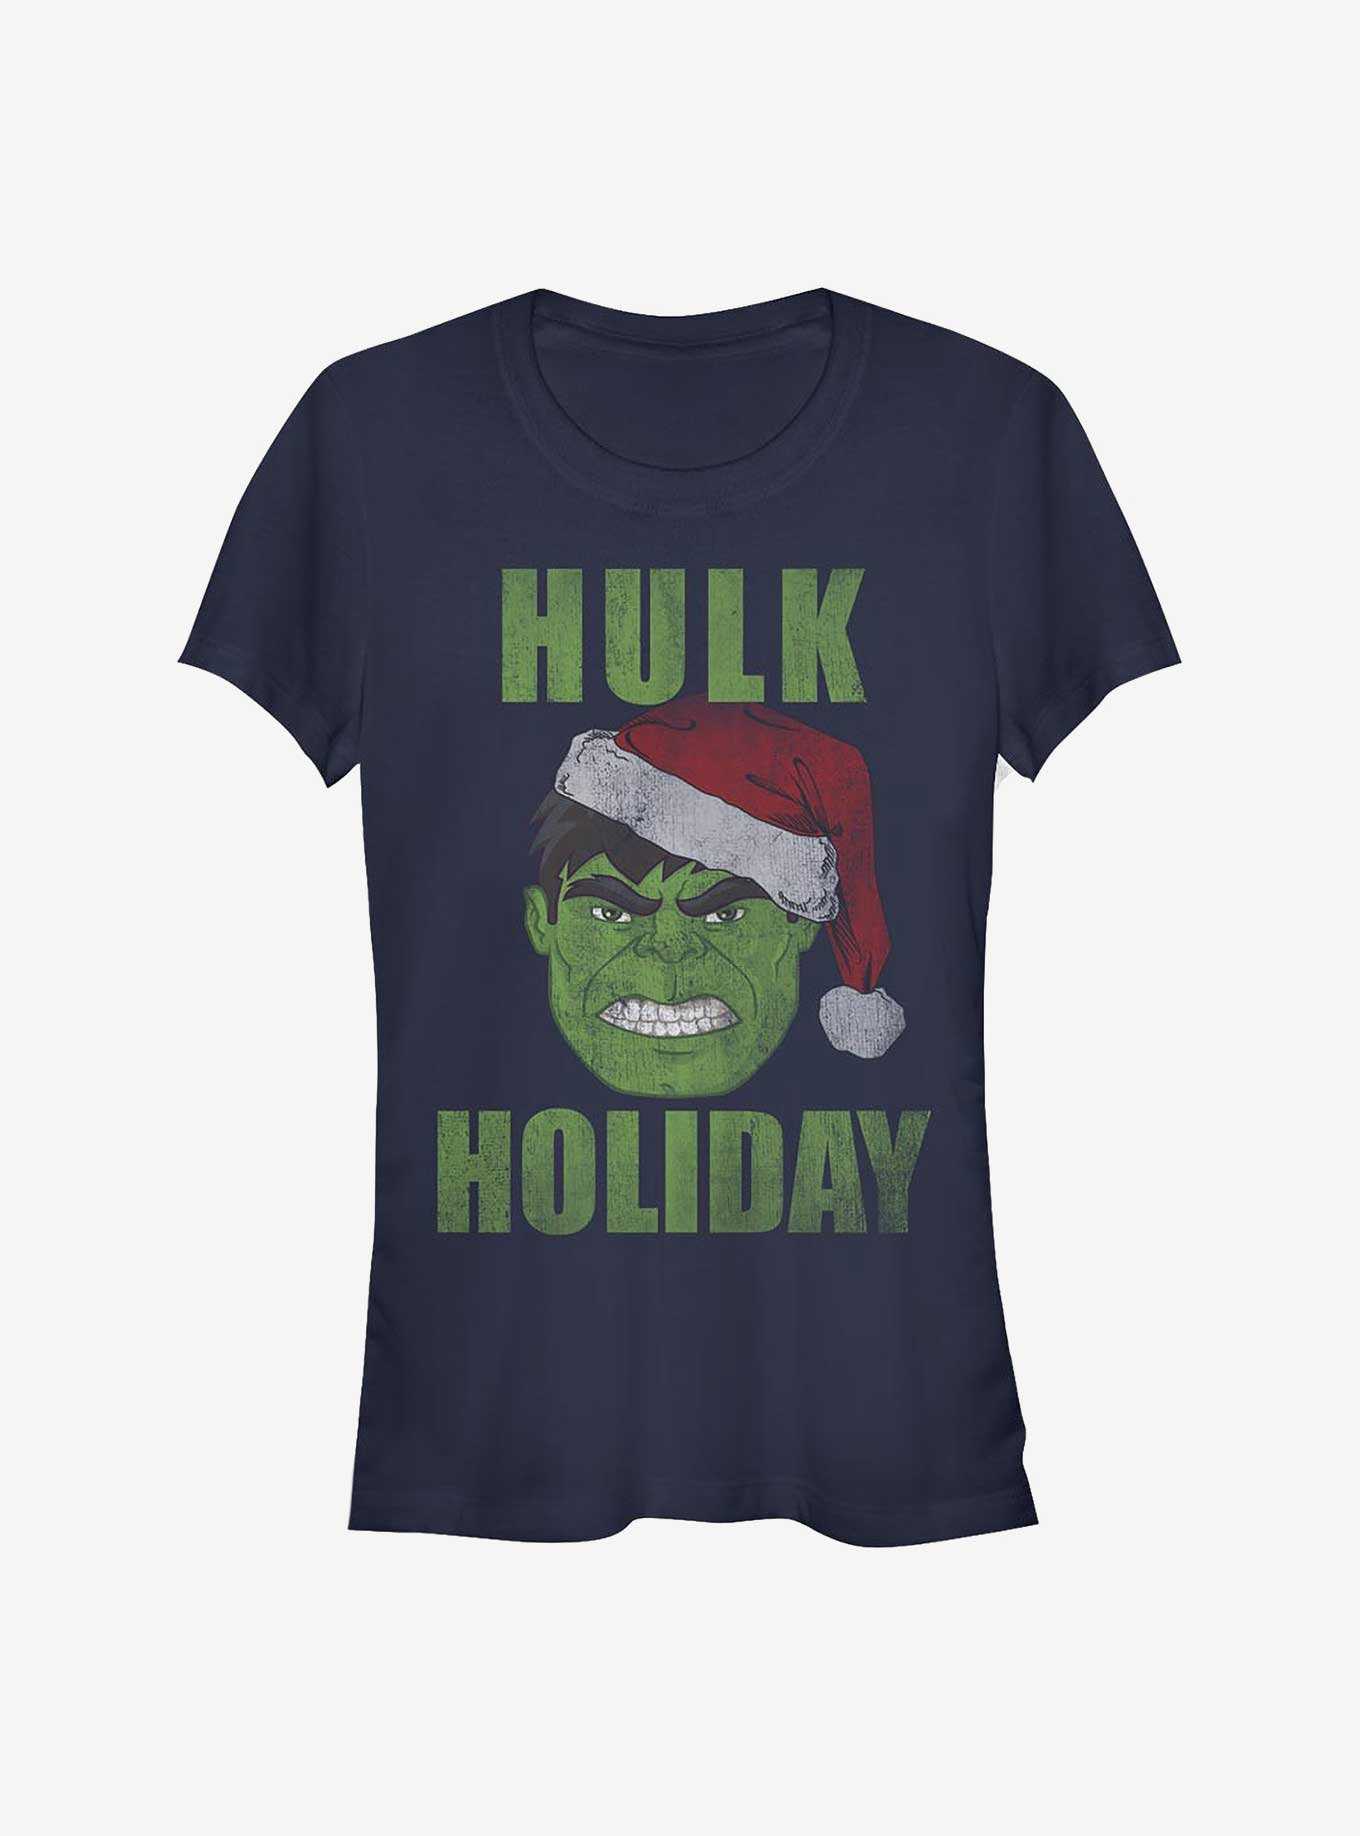 Marvel The Hulk Hulk Holiday Girls T-Shirt, , hi-res